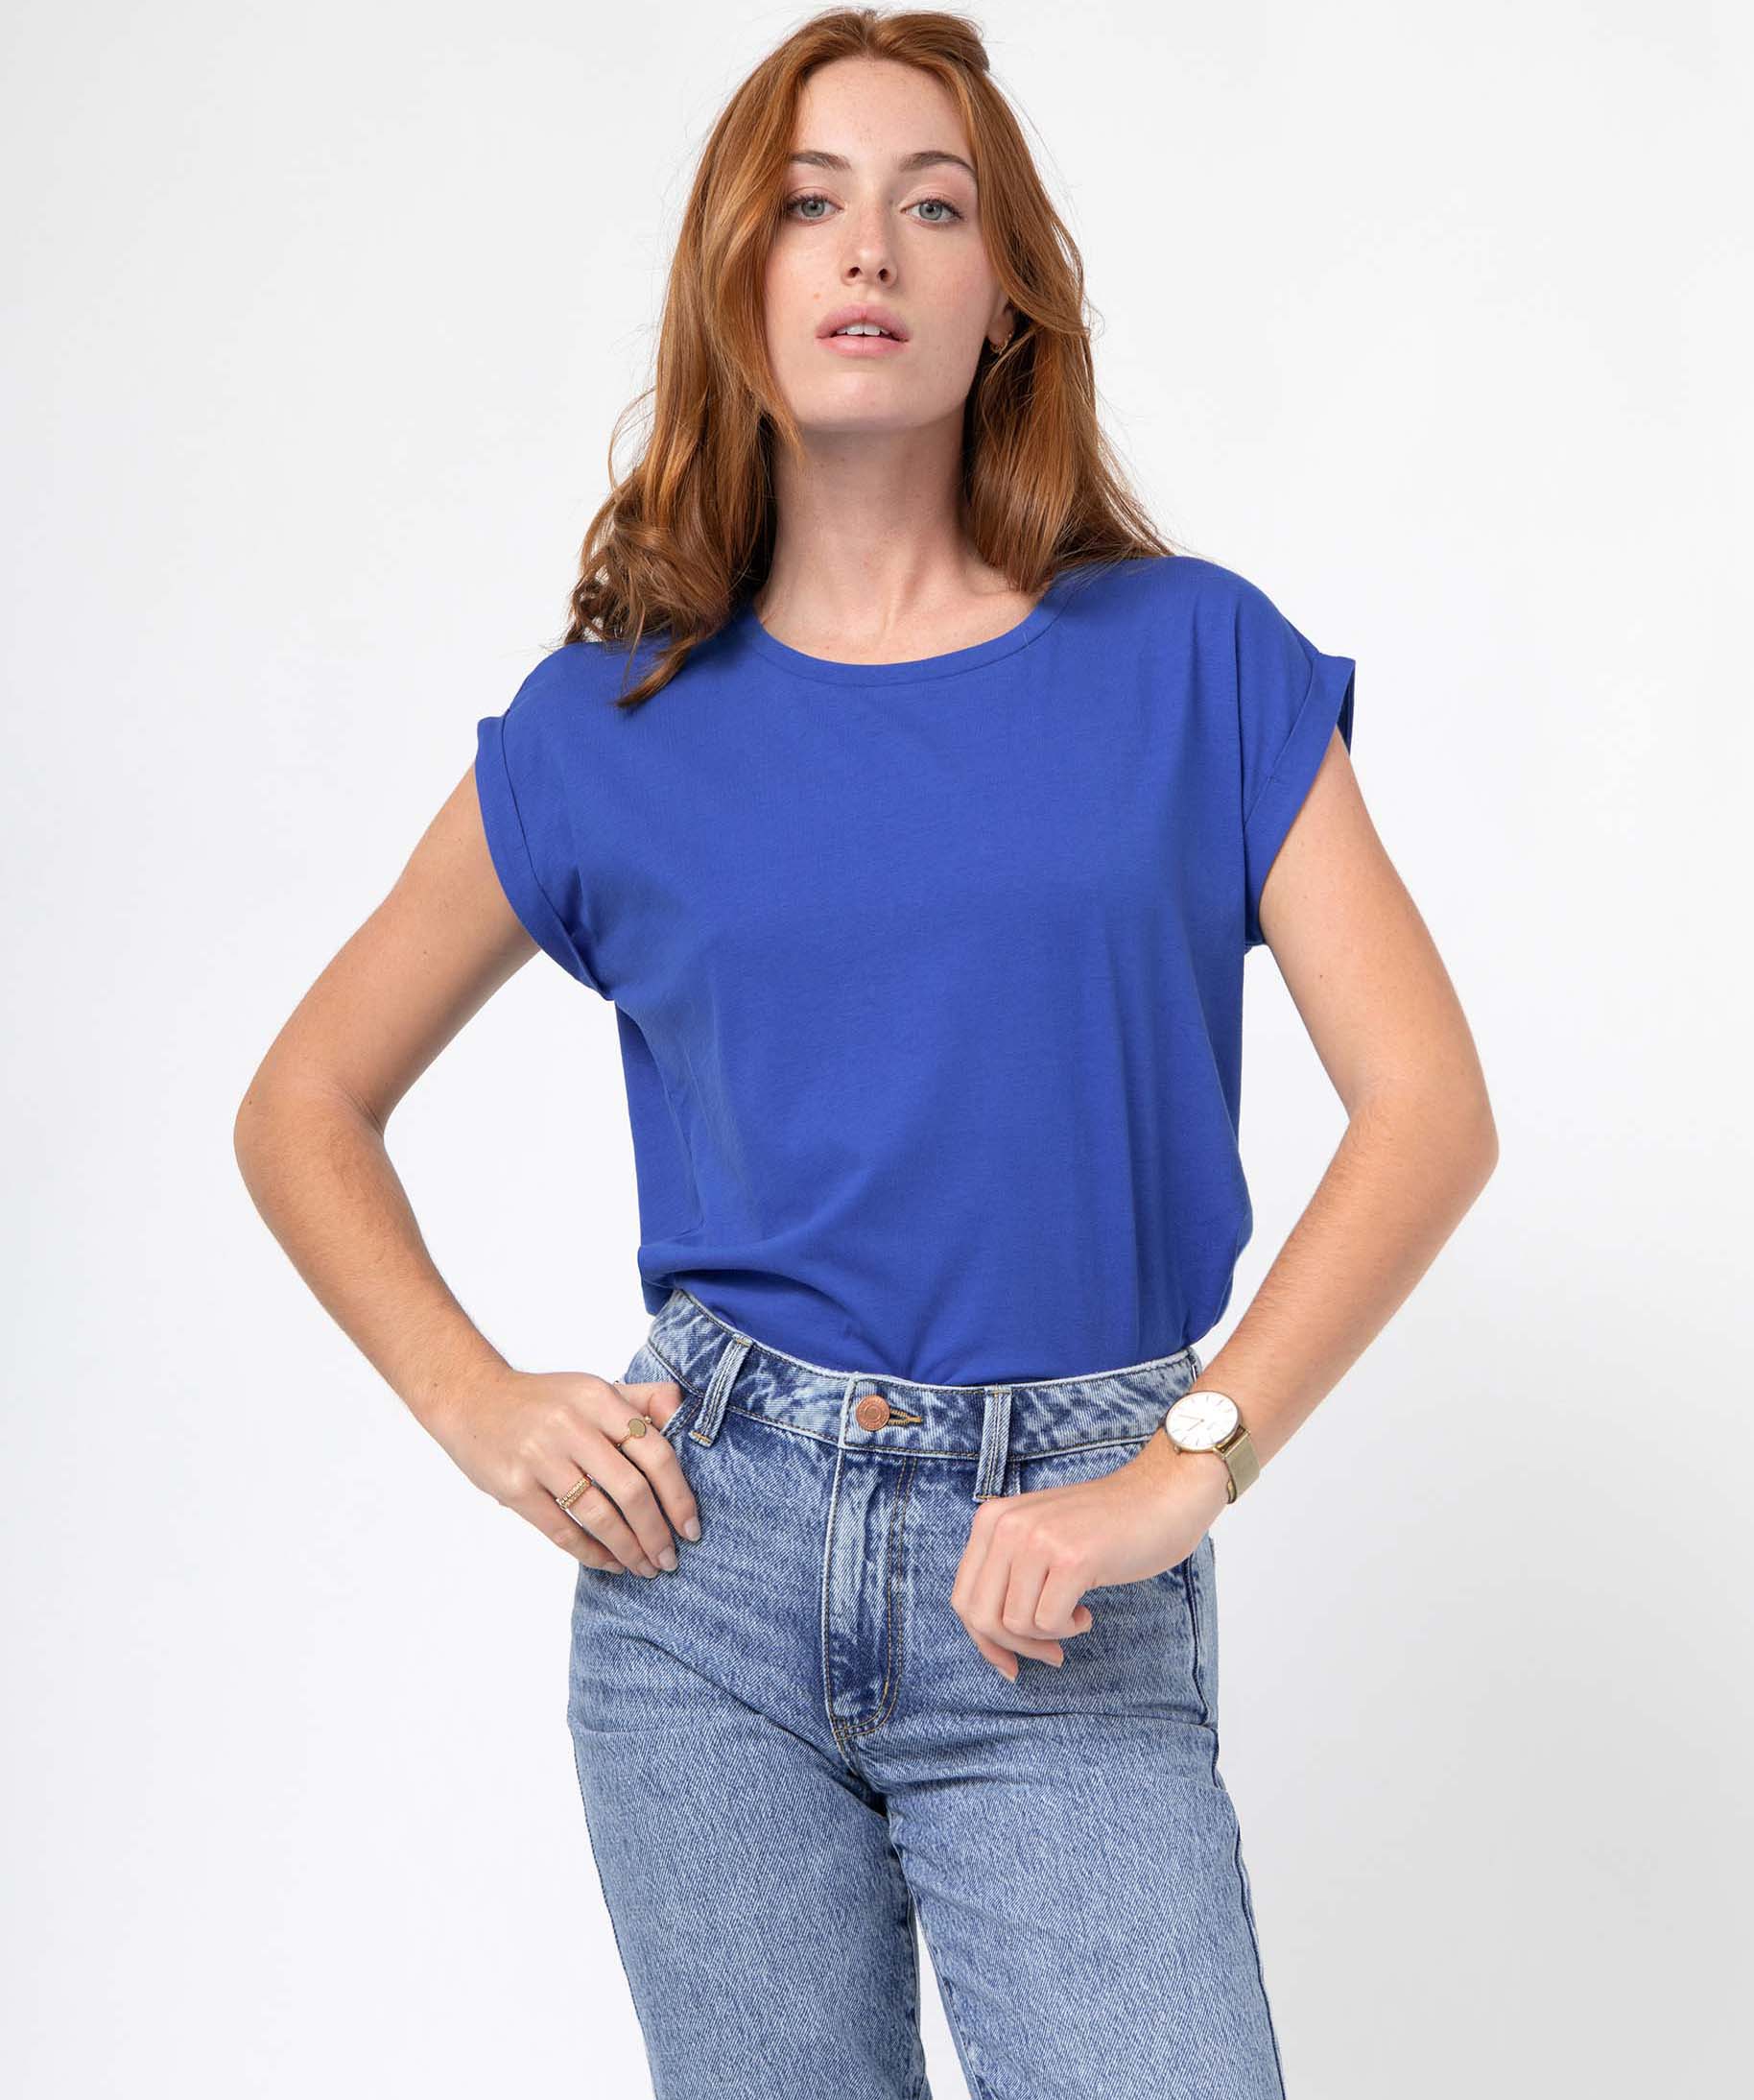 tee-shirt femme a manches courtes avec revers bleu t-shirts manches courtes